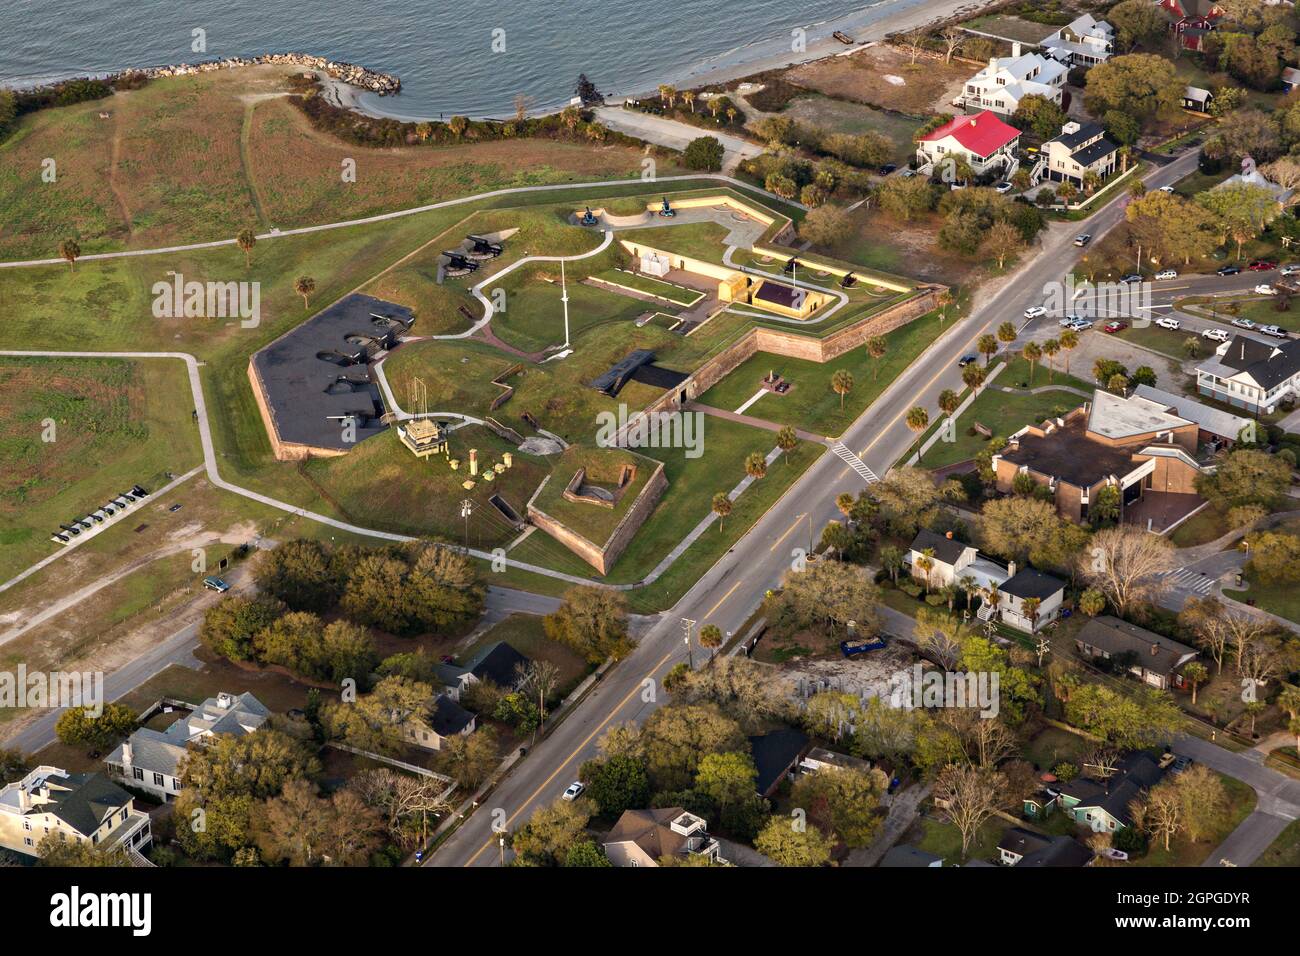 Vista aérea de la parte de Fort Moltrie del Parque Histórico Nacional Fort Sumter en la Isla Sullivans, Carolina del Sur. El fuerte estuvo activo desde 1776 hasta 1947 e instrumental durante la Guerra Revolucionaria Americana y la Guerra Civil Americana. Foto de stock